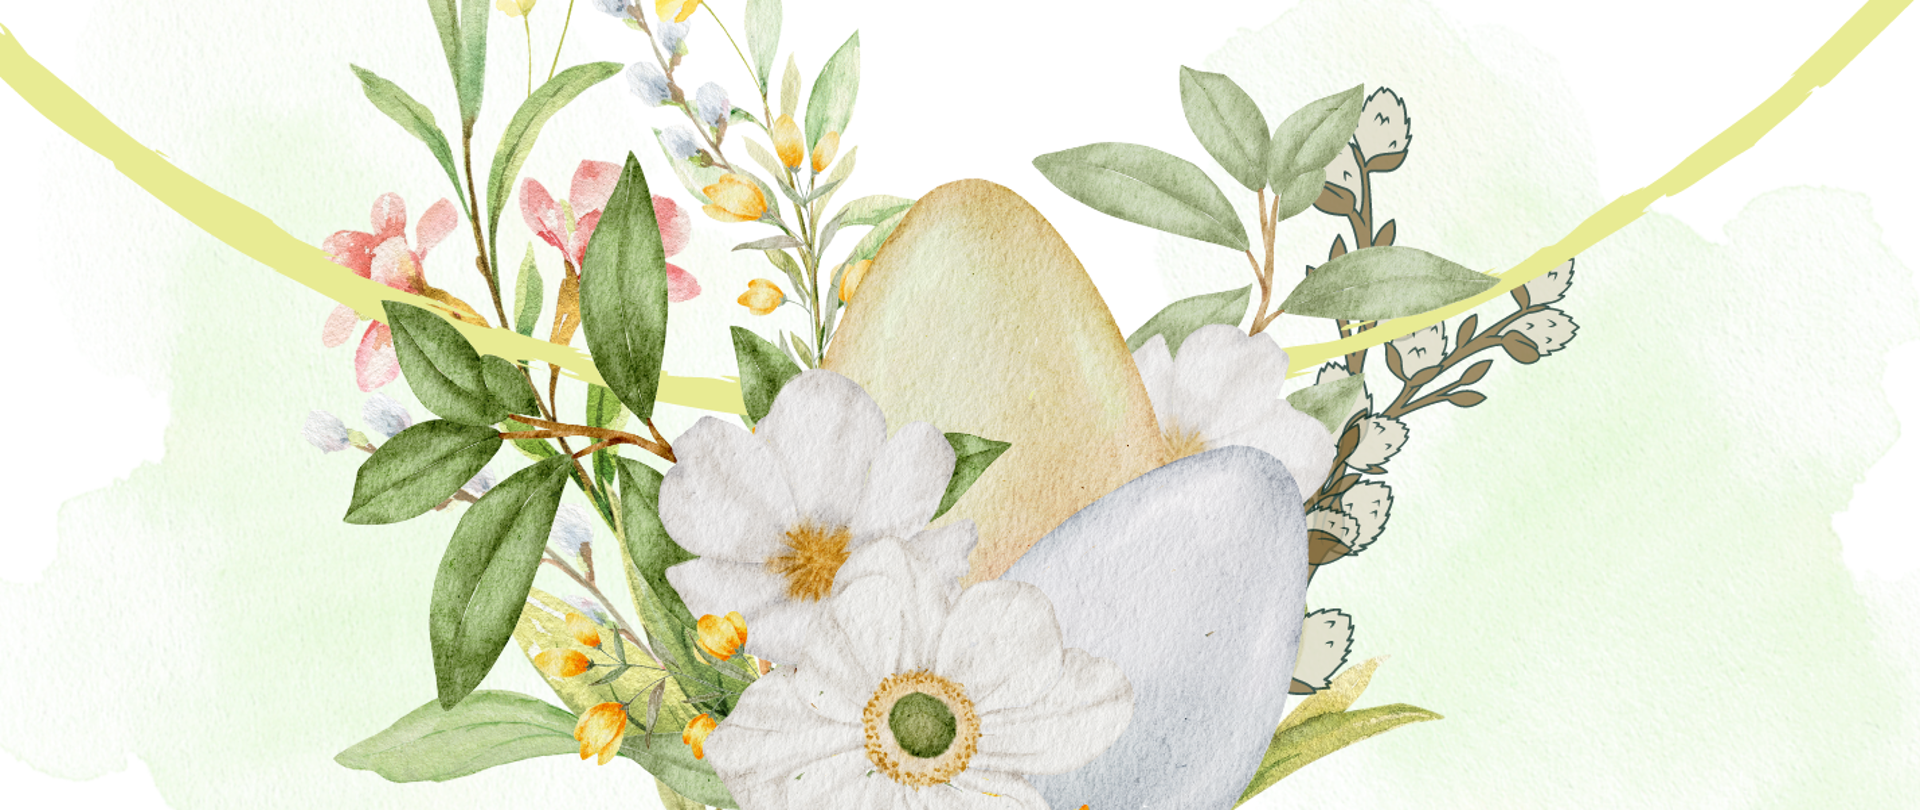 Ikona jajek oraz wiosennych kwiatów, nad nimi życzenia wielkanocne